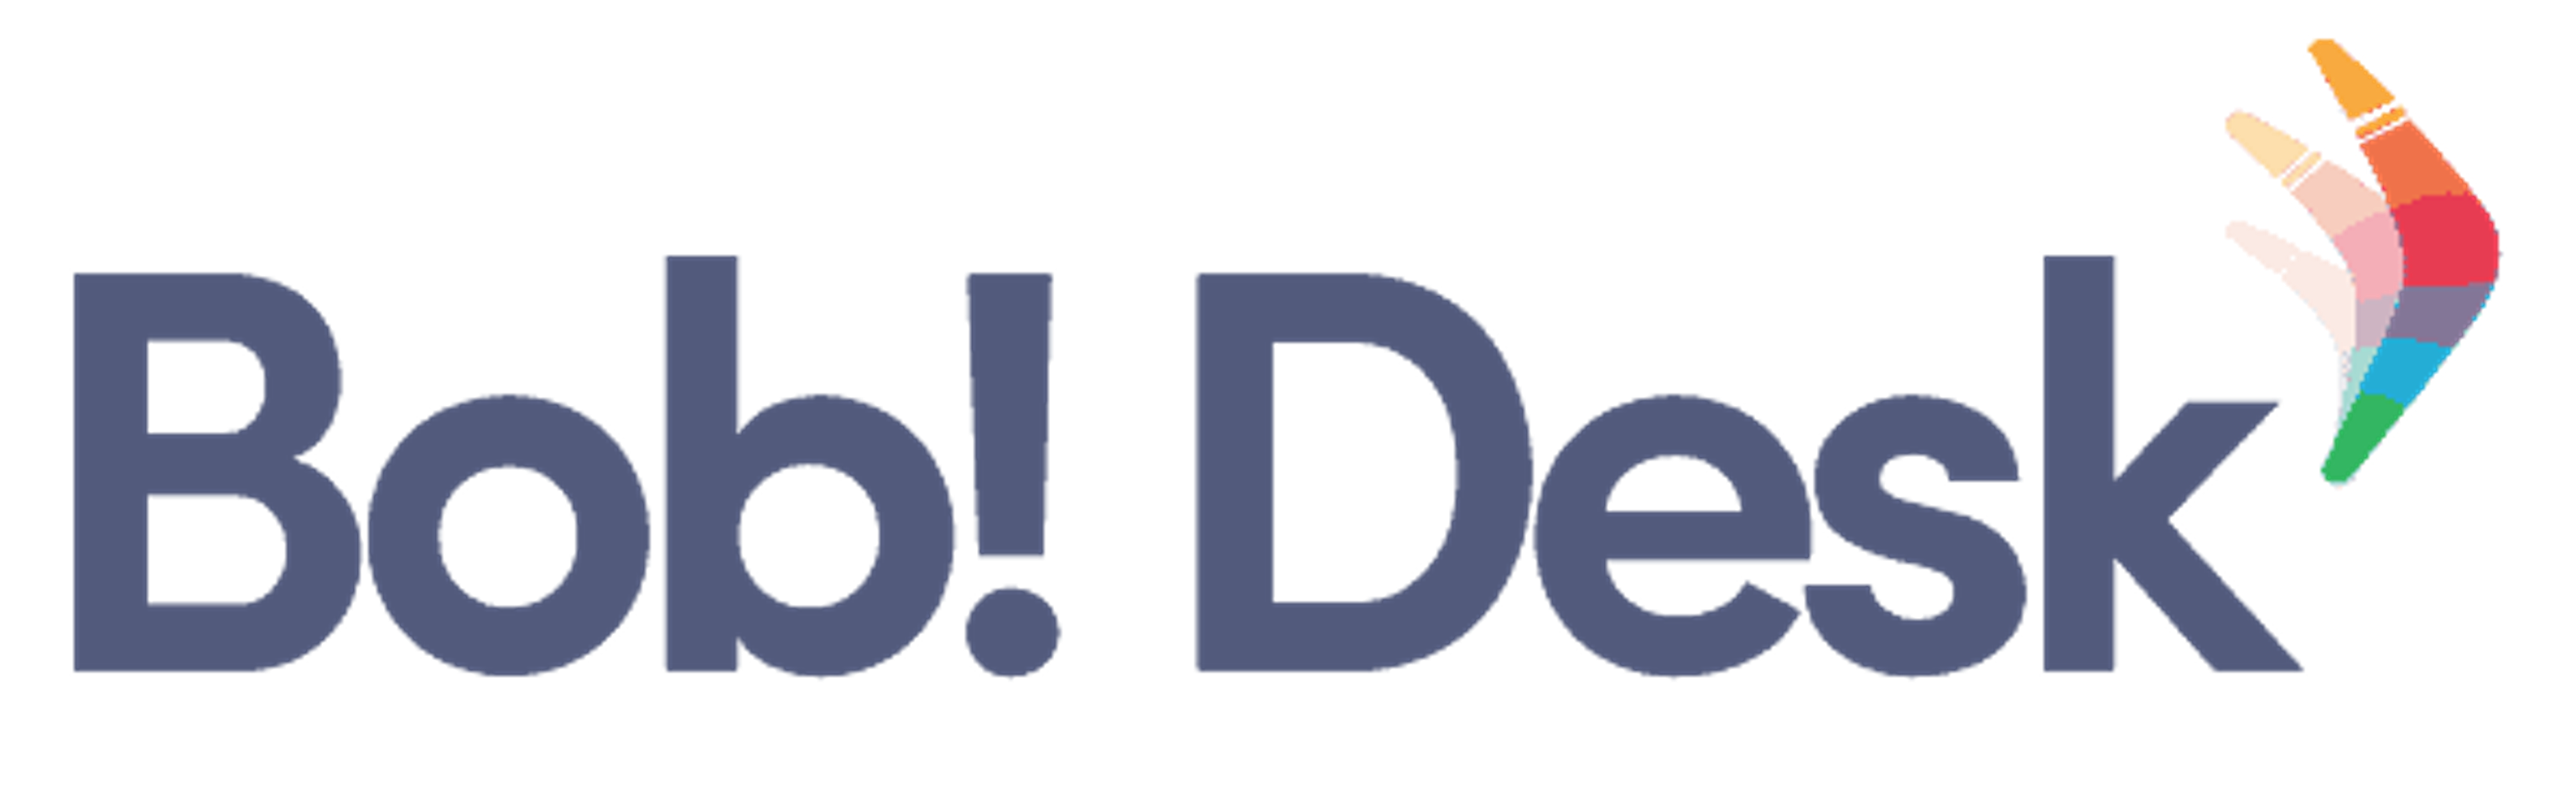 Logo header mobile